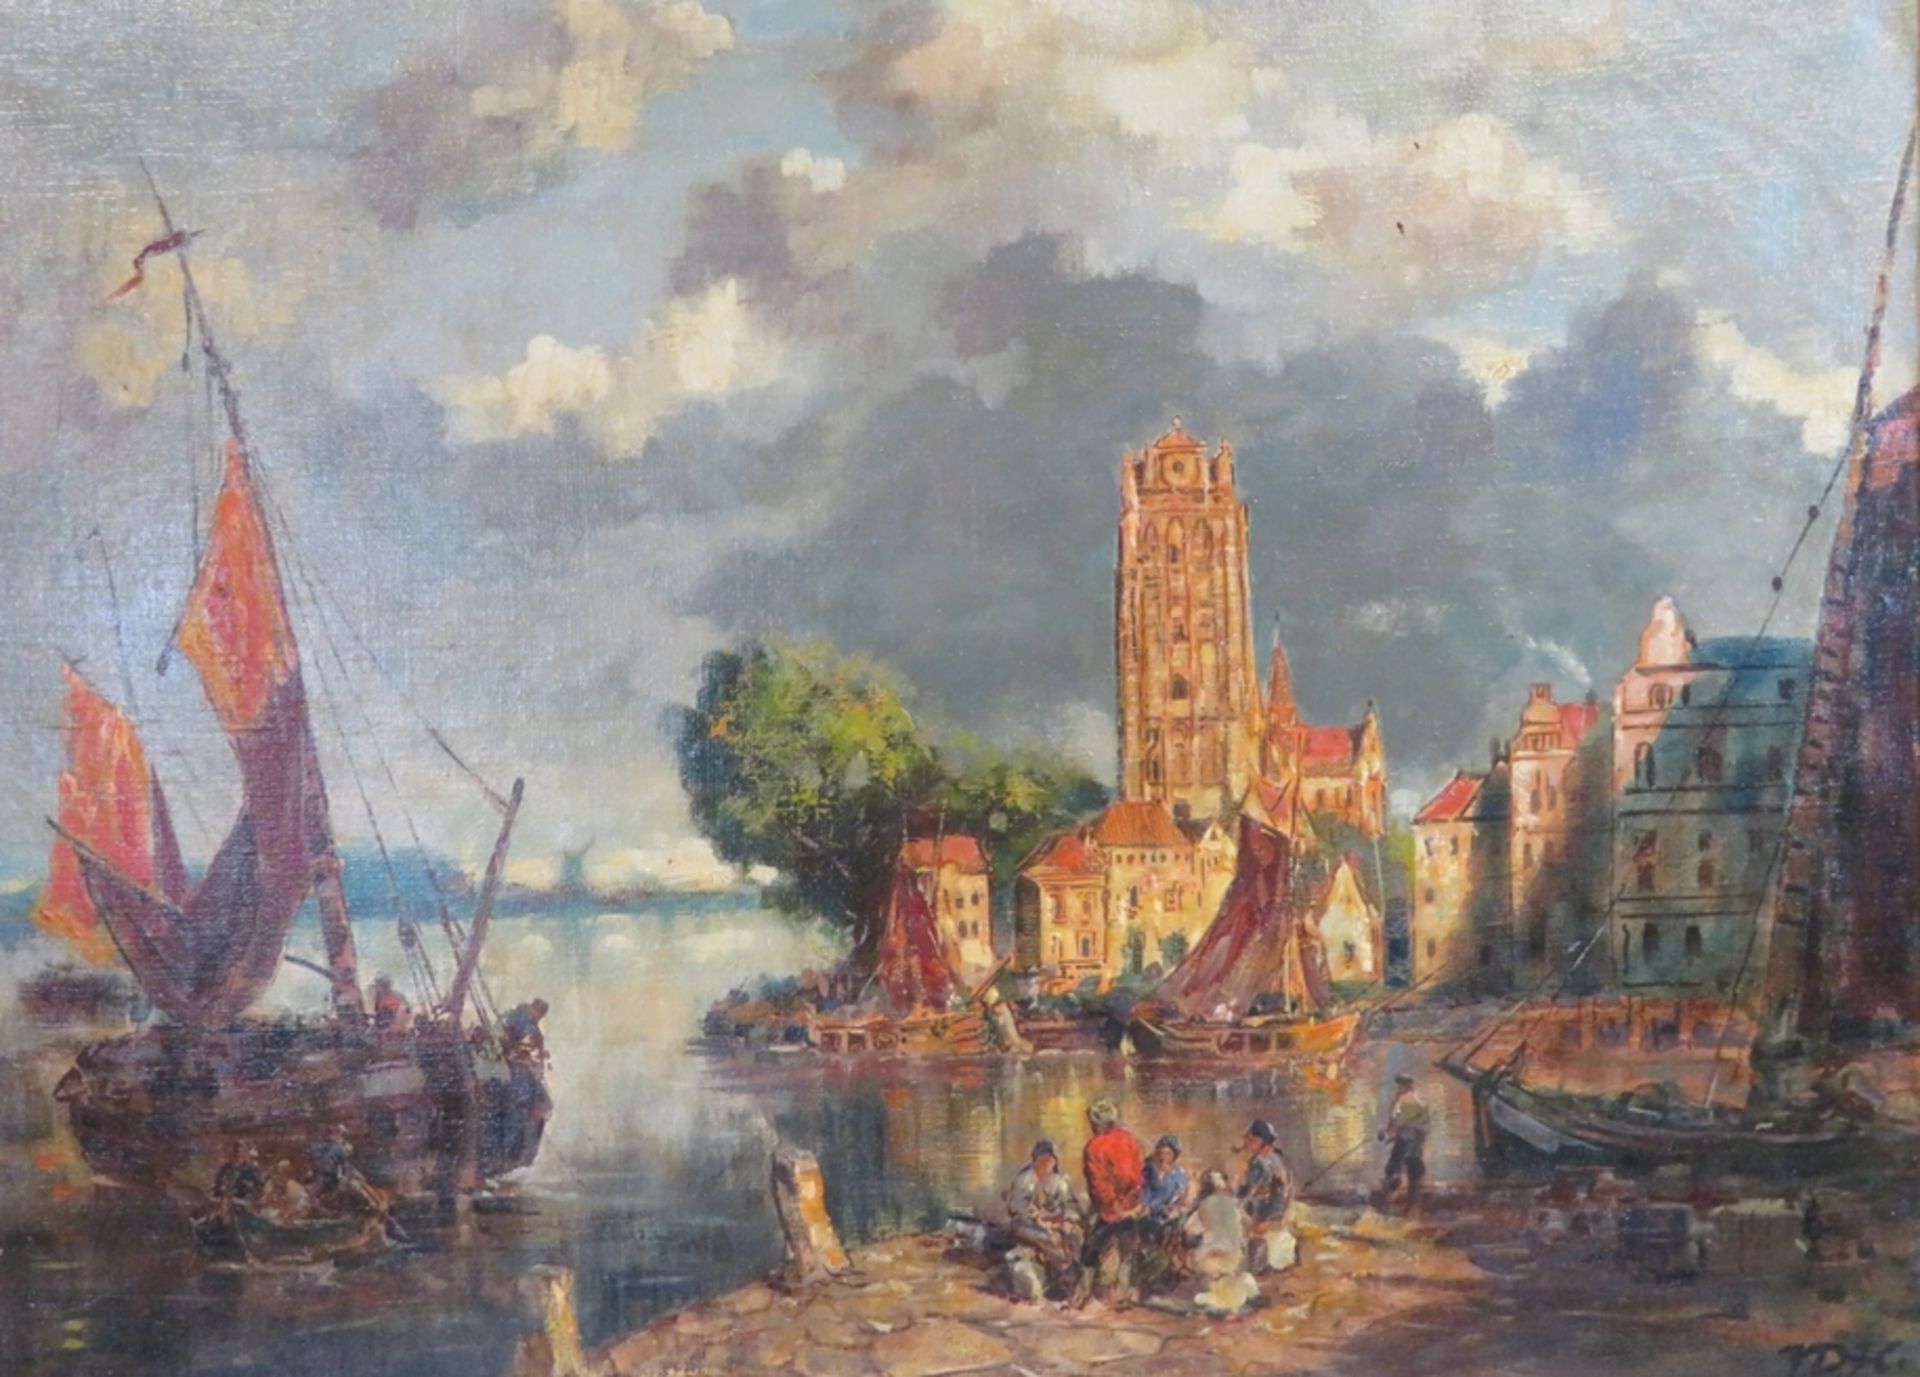 Heide, Dorul van der, 1903 - 1994, München - Weil bei Landsberg am Lech, niederländischer Künstler,